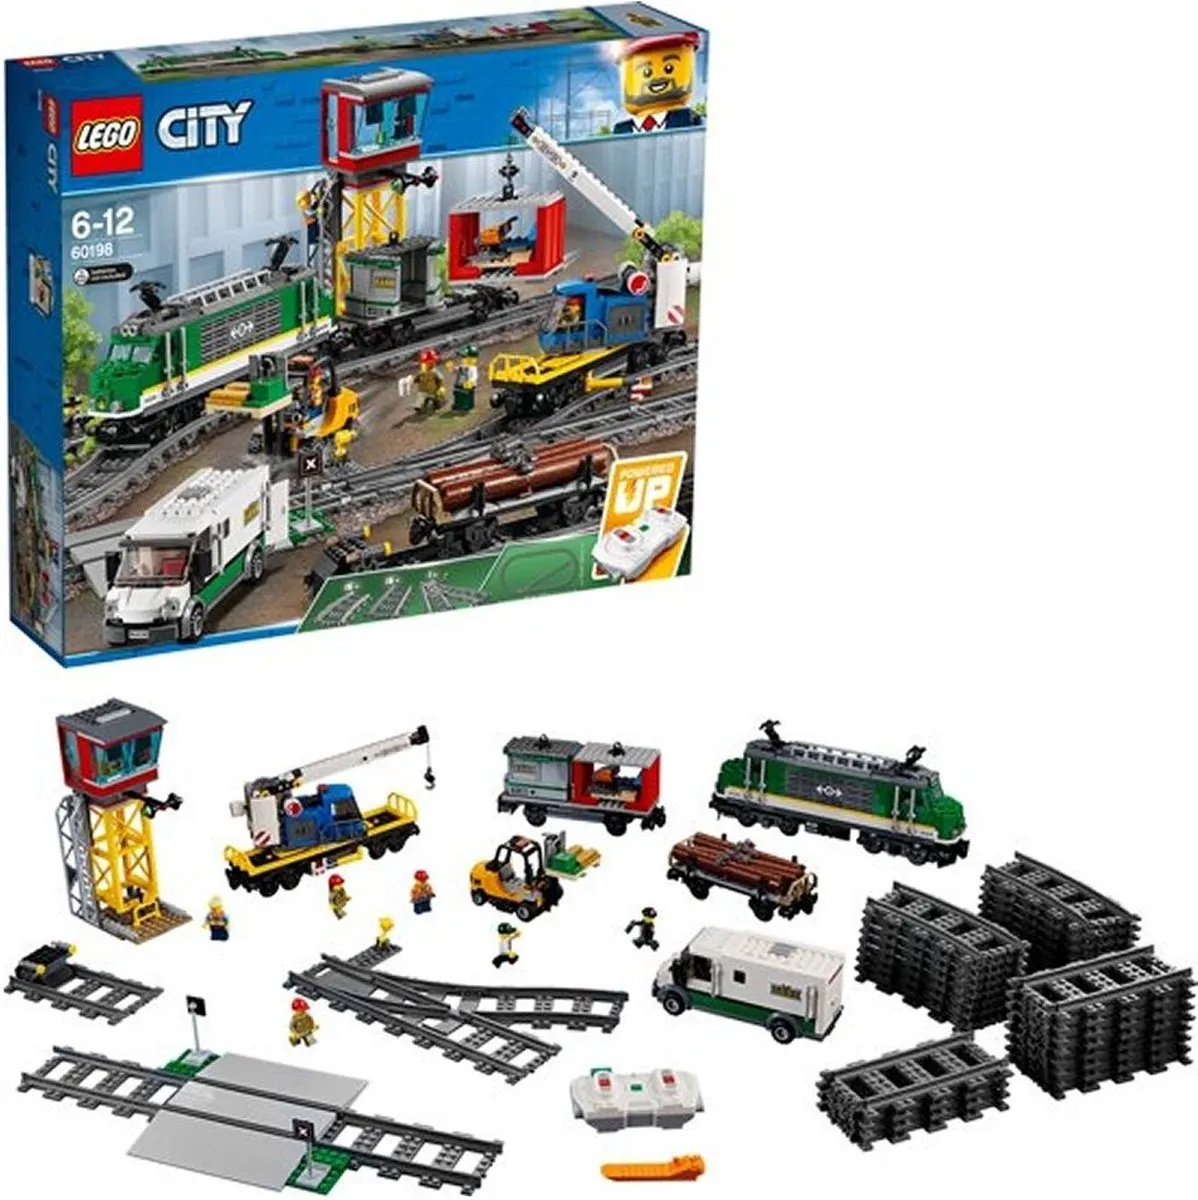 LEGO City Treinen Vrachttrein - 60198 speelgoed